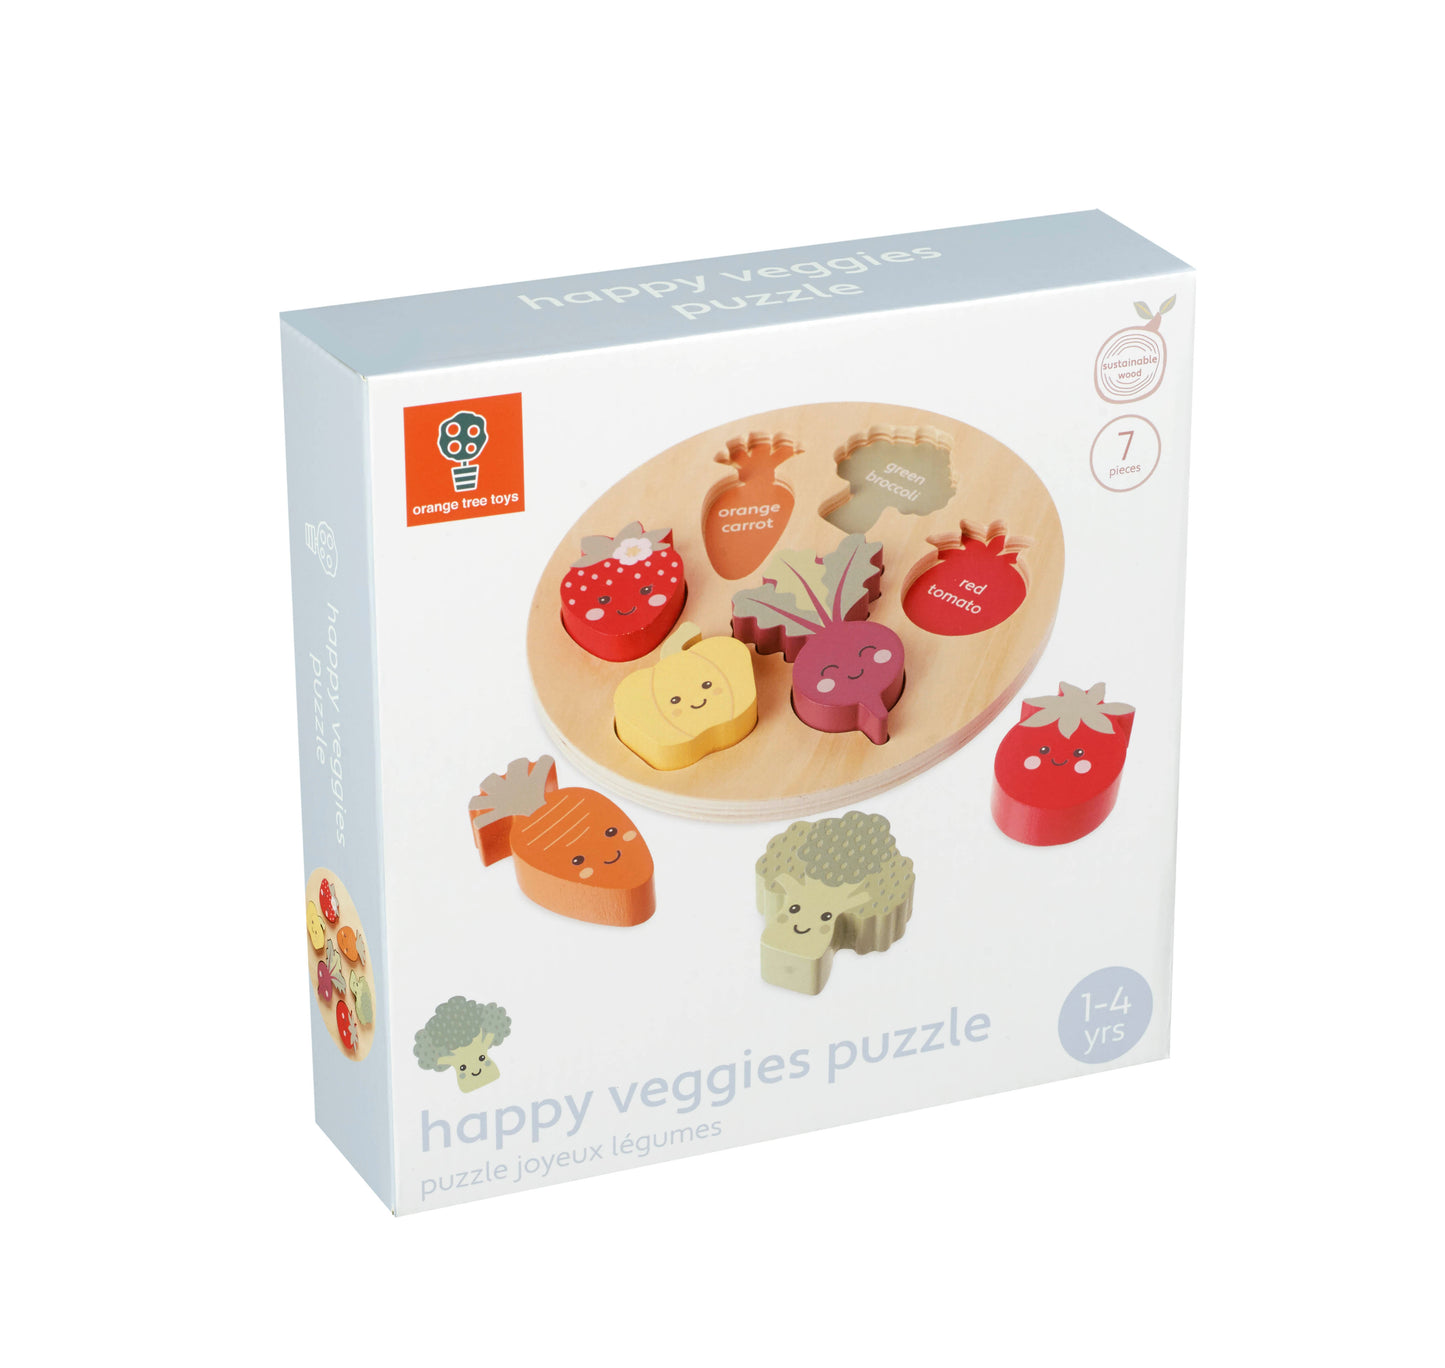 Orange Tree Toys Happy Veggies Puzzle